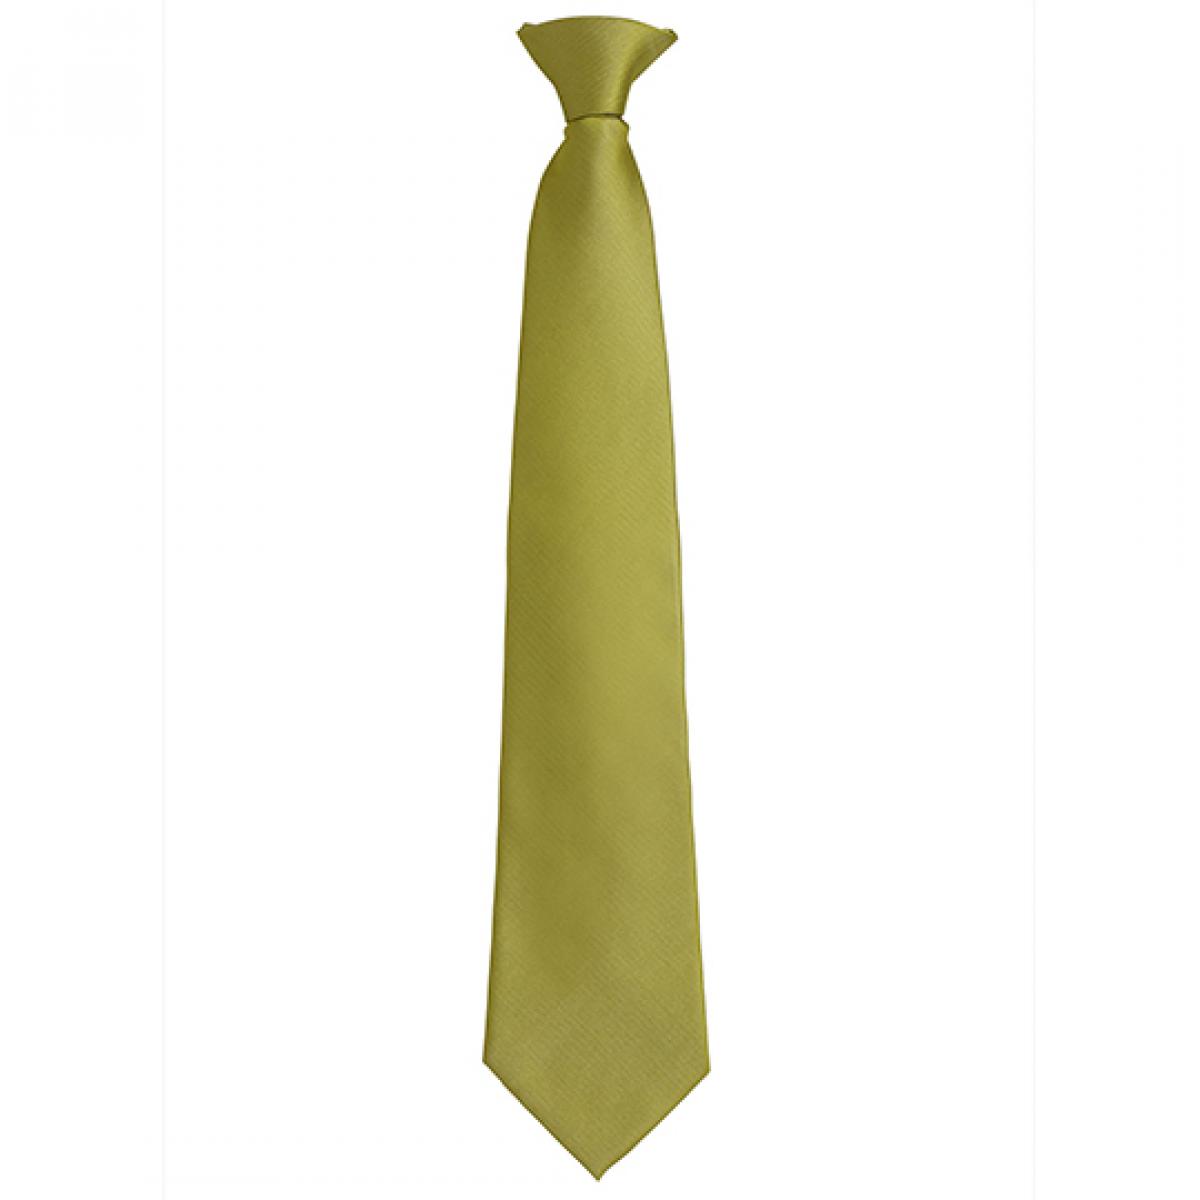 Hersteller: Premier Workwear Herstellernummer: PR785 Artikelbezeichnung: ´Colours´ Fashion Clip Tie Farbe: Grass (ca. Pantone 7761C)